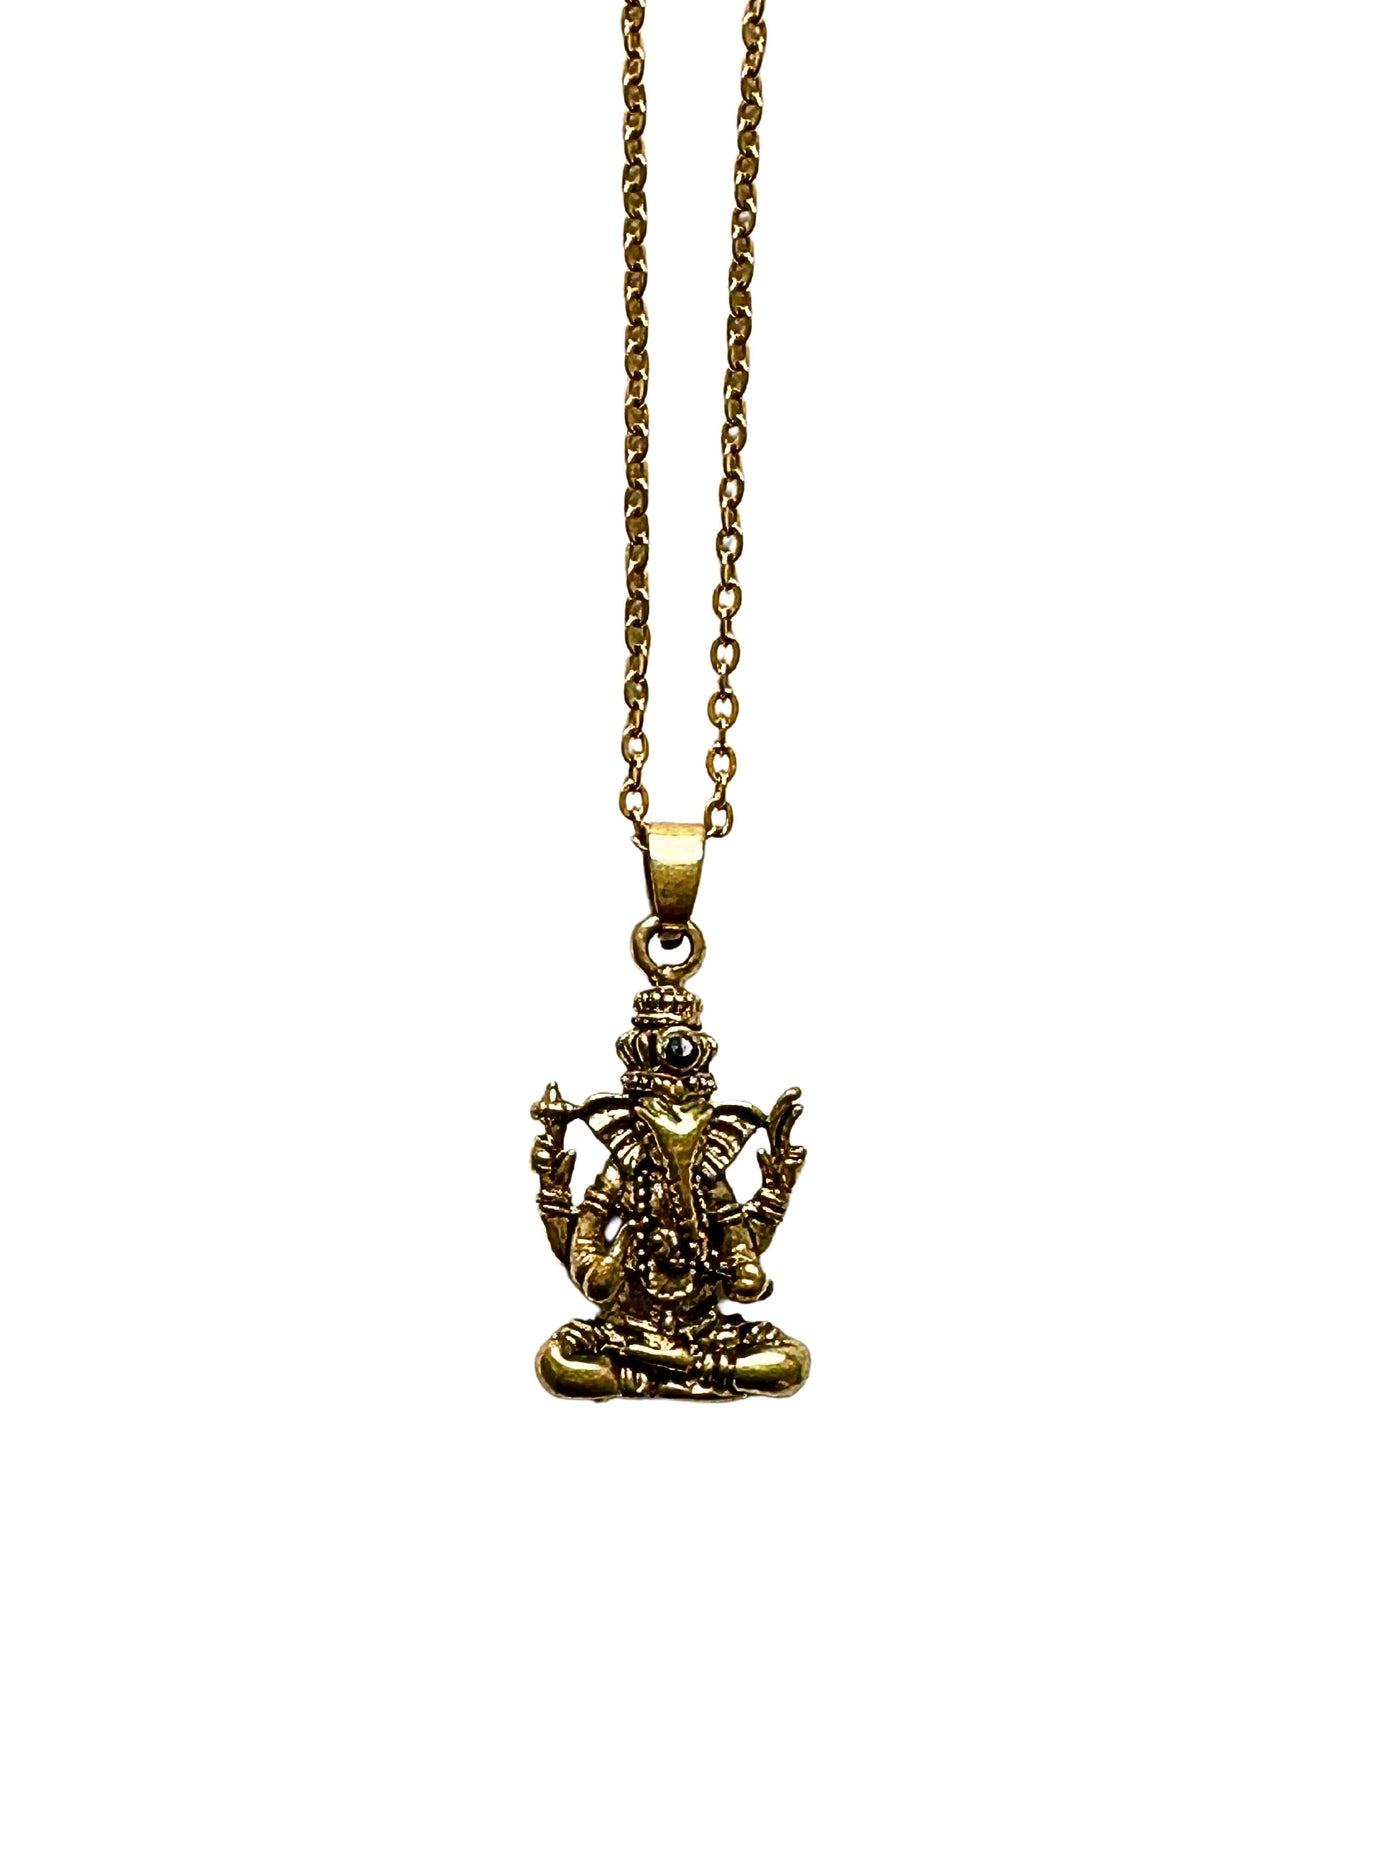 Ganesha Onyx Necklace